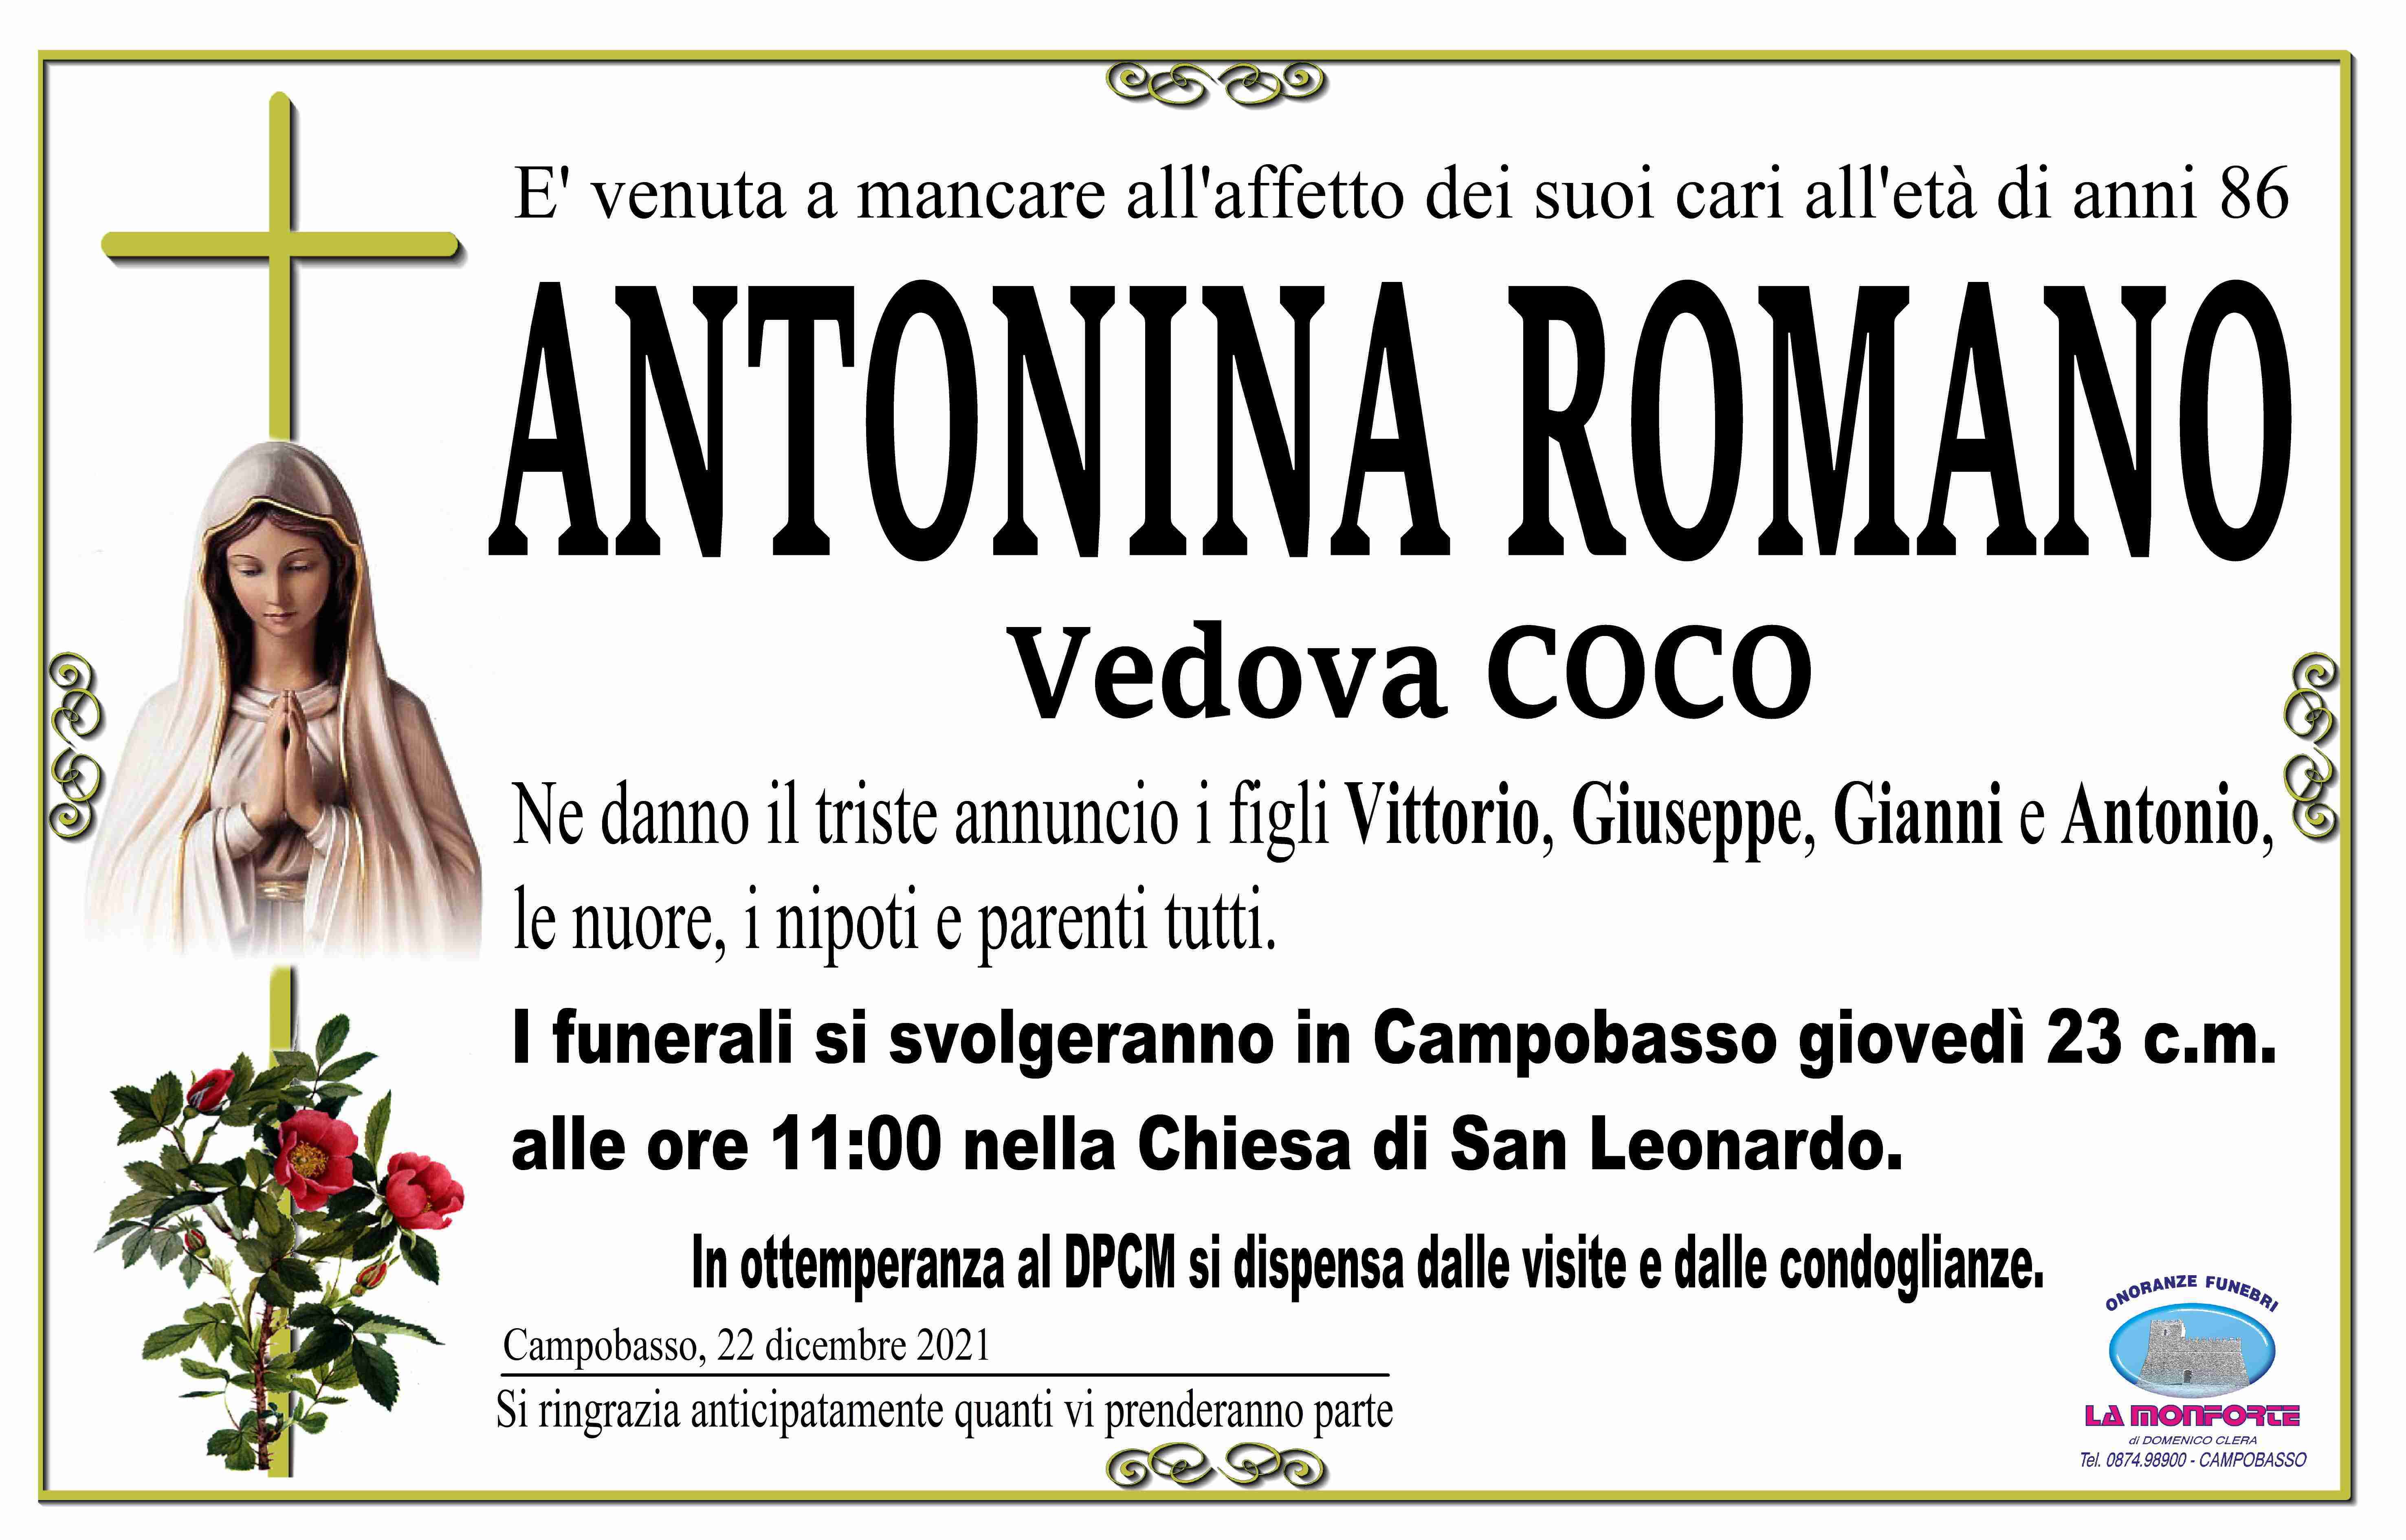 Antonina Romano